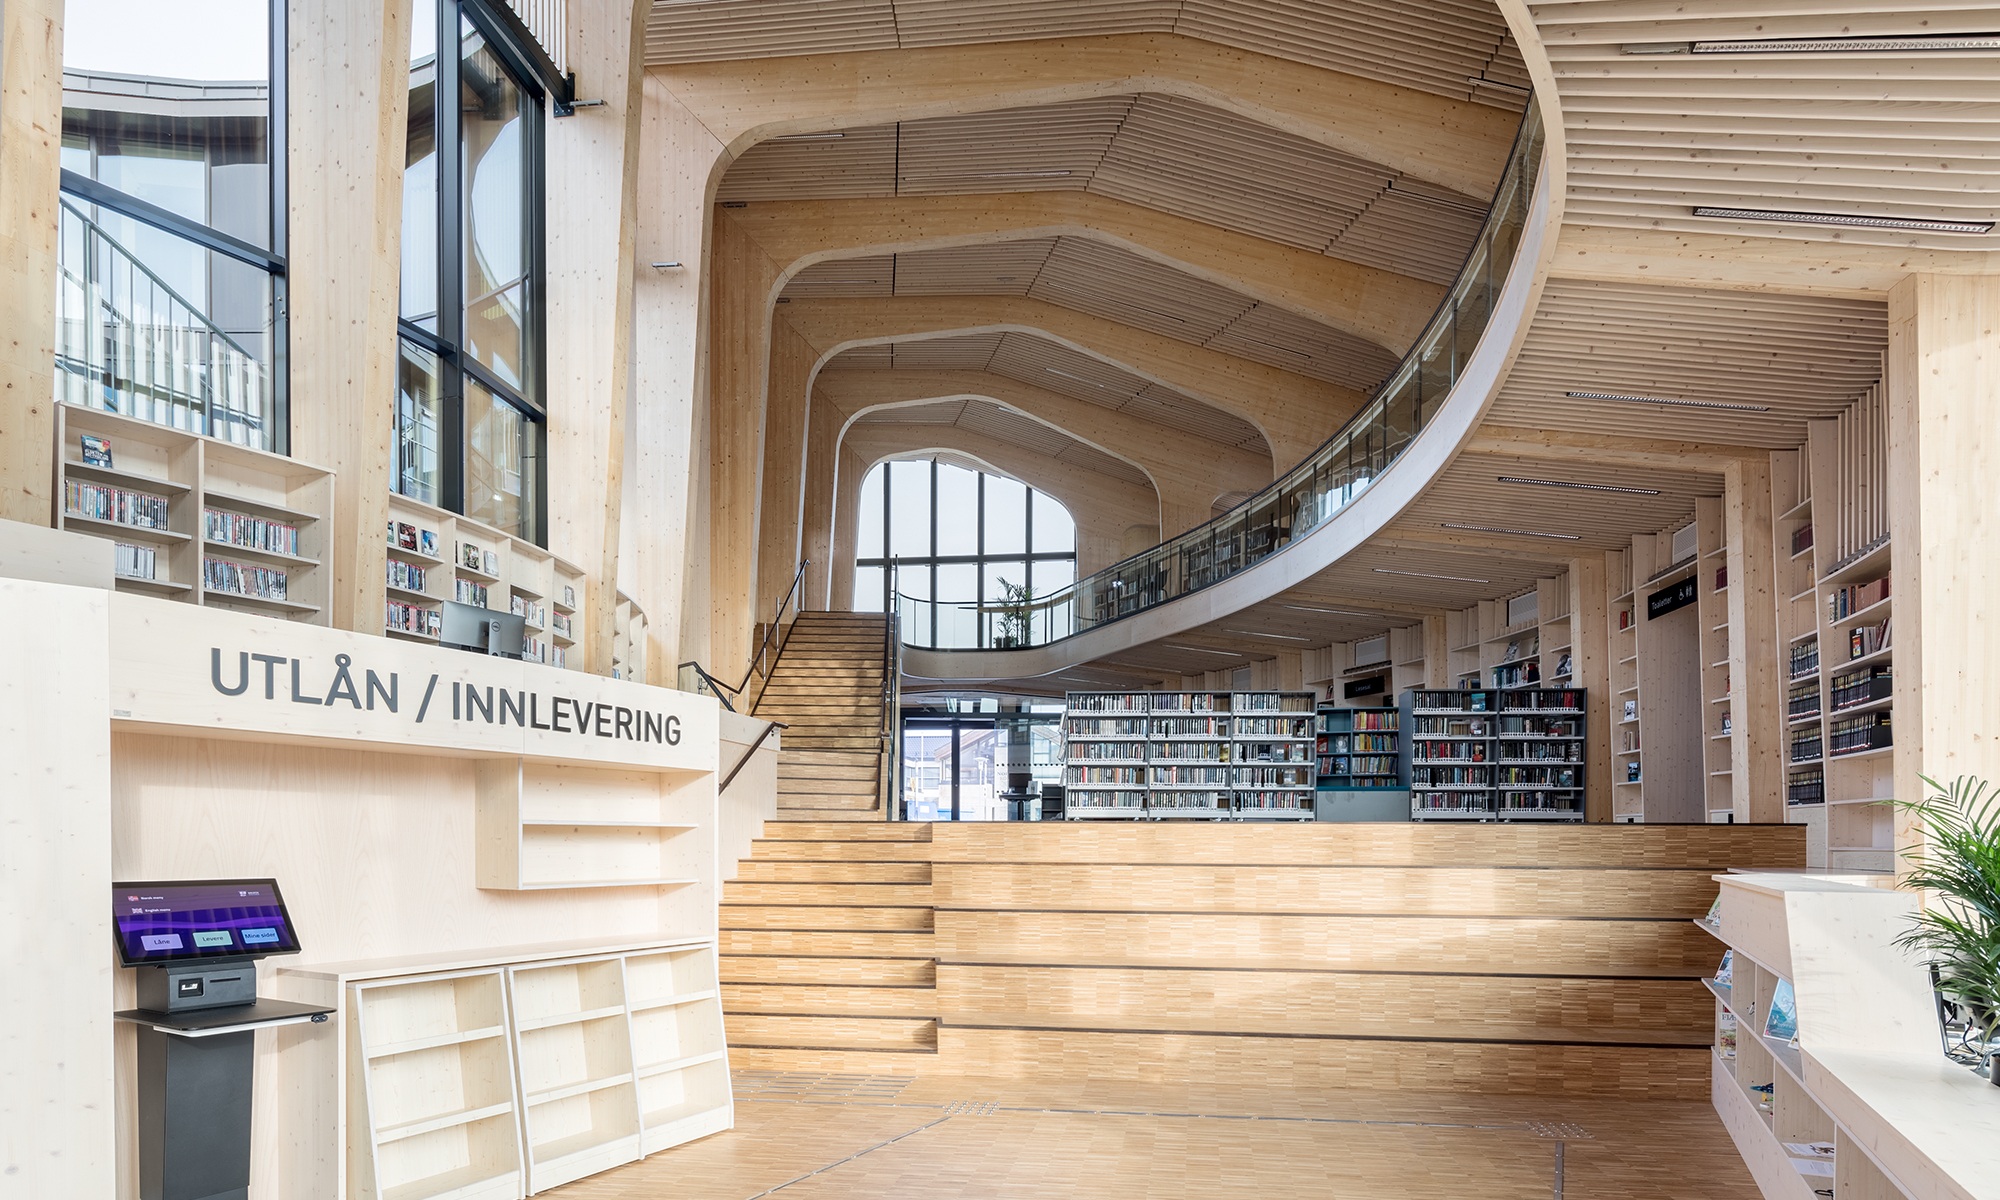 Bibliothèque avec galerie et étagères à livres dans une construction en bois courbée.